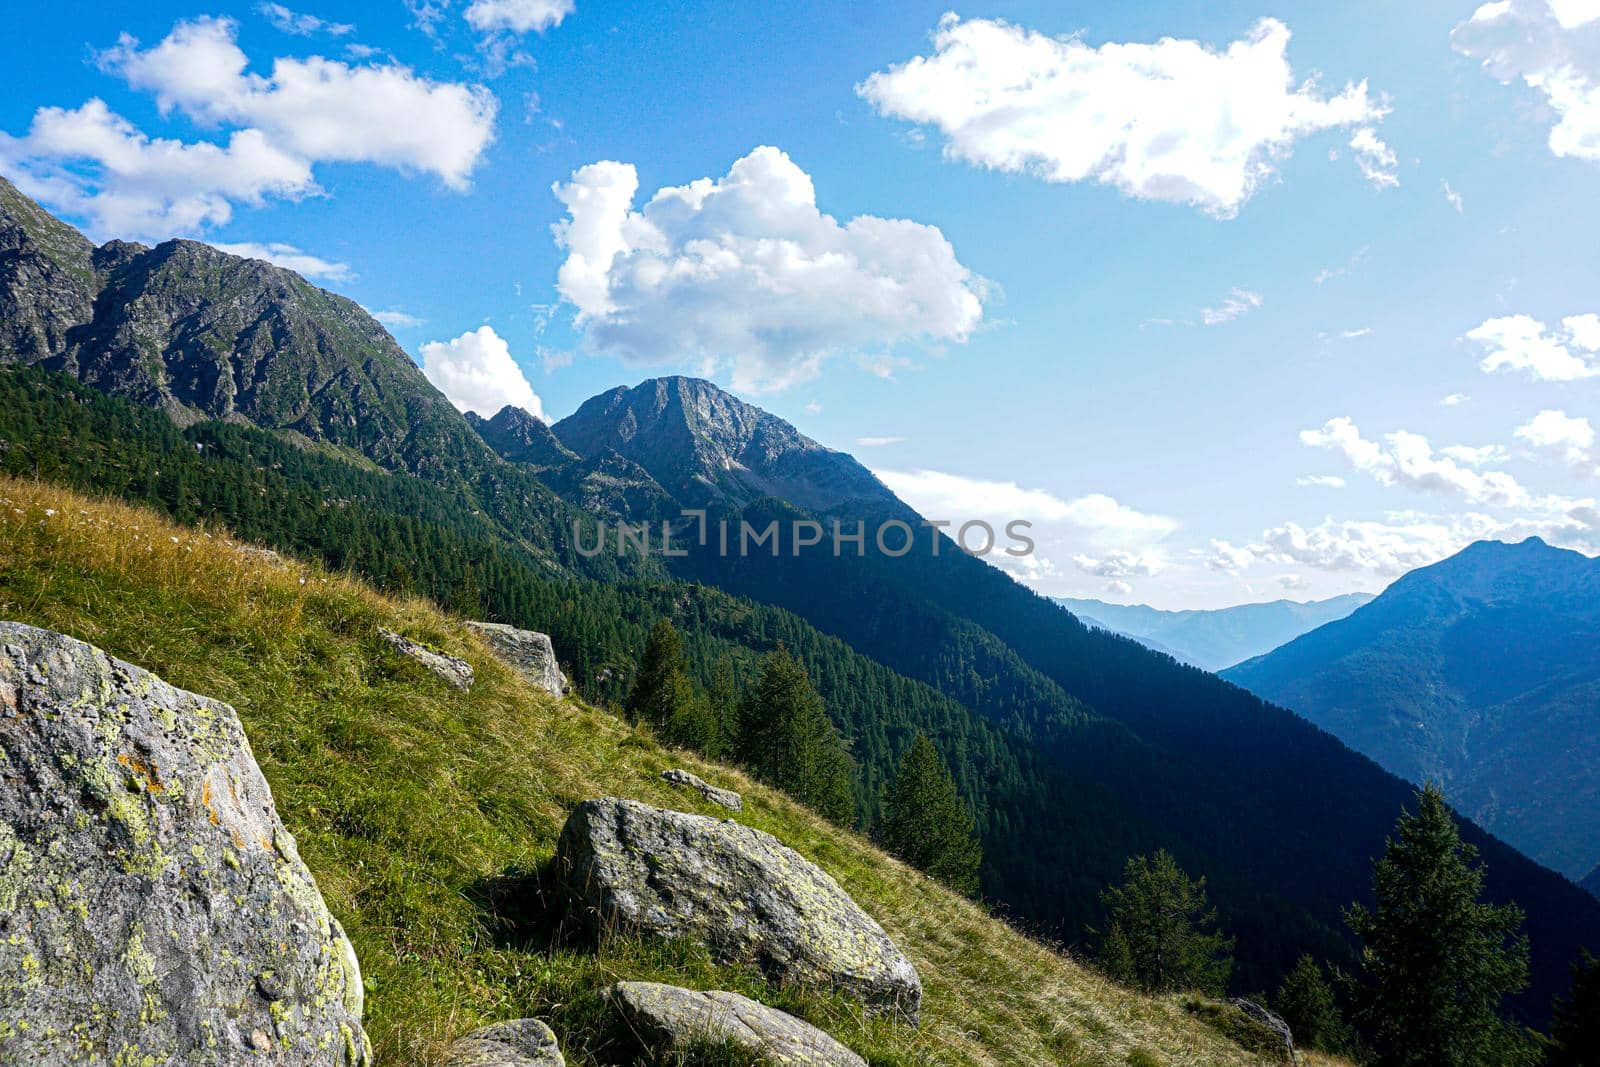 Incredible landscape in the Lavizzara Valley, Ticino, Switzerland